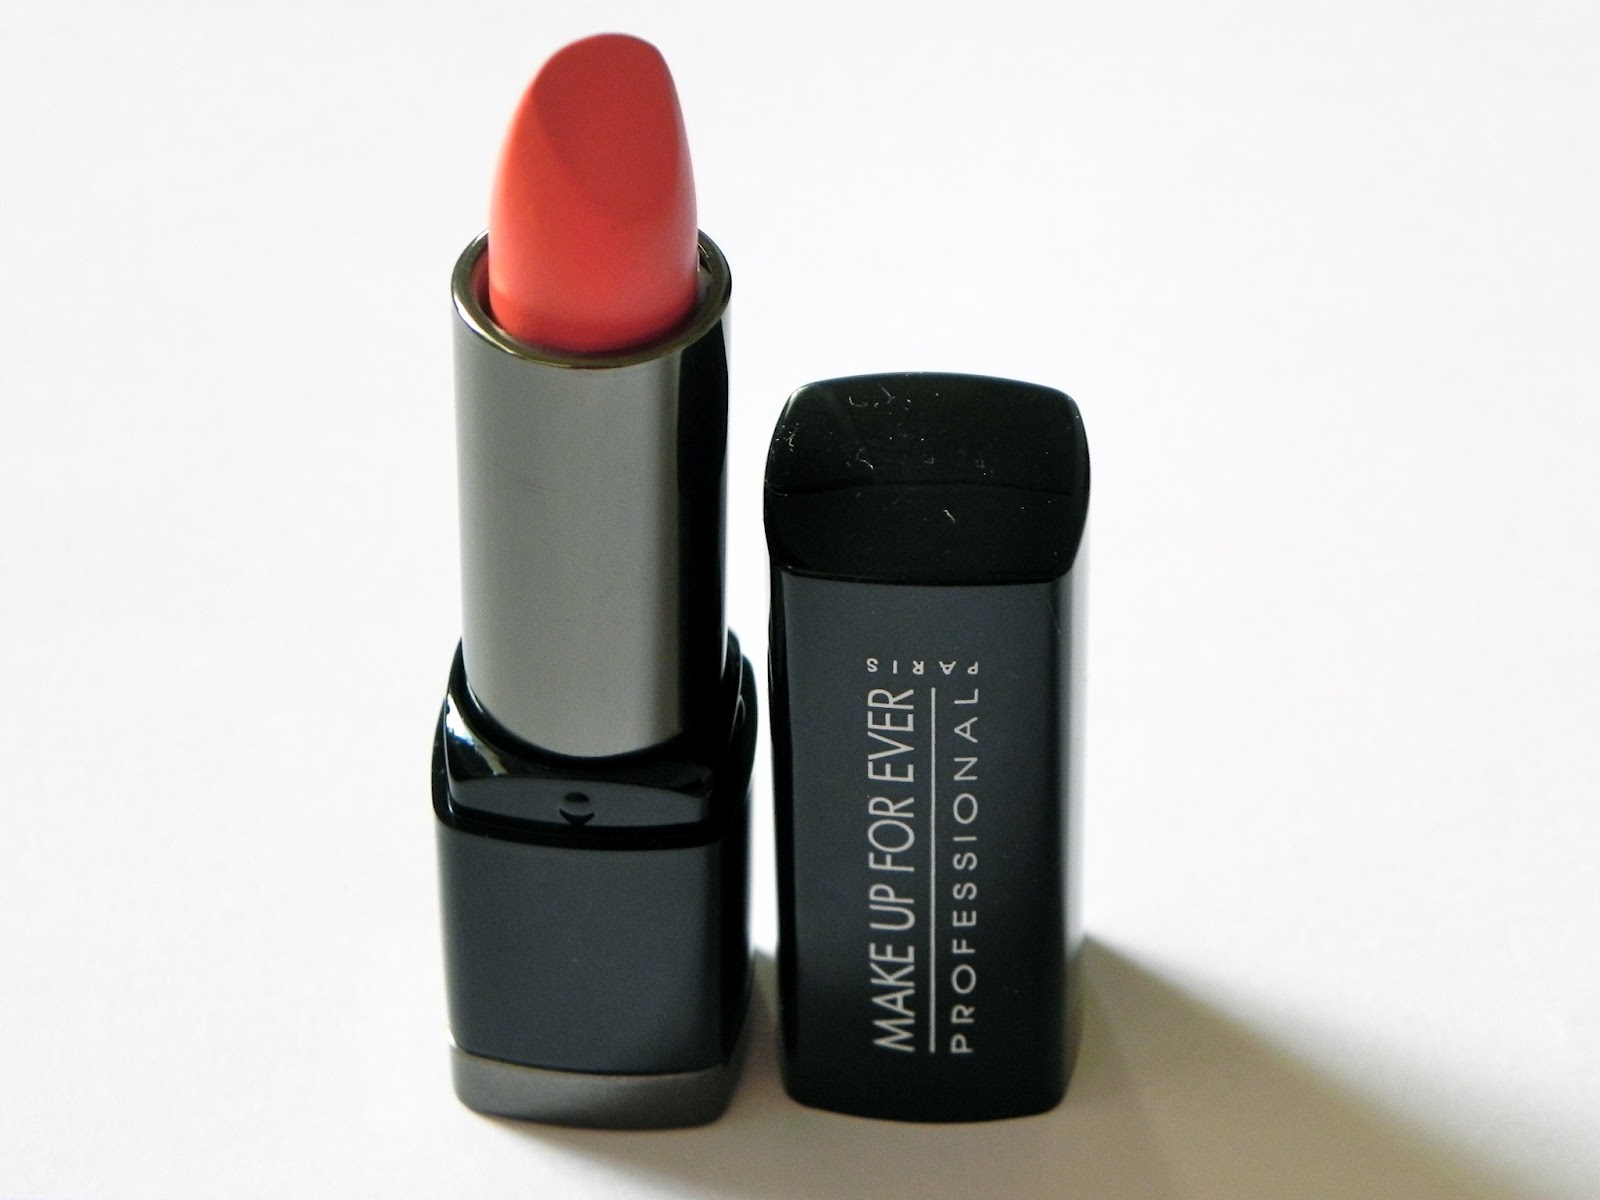 Make Up For Ever Artist Nude Creme Skin Flattering Liquid Lipsticks -  CrystalCandy Makeup Blog